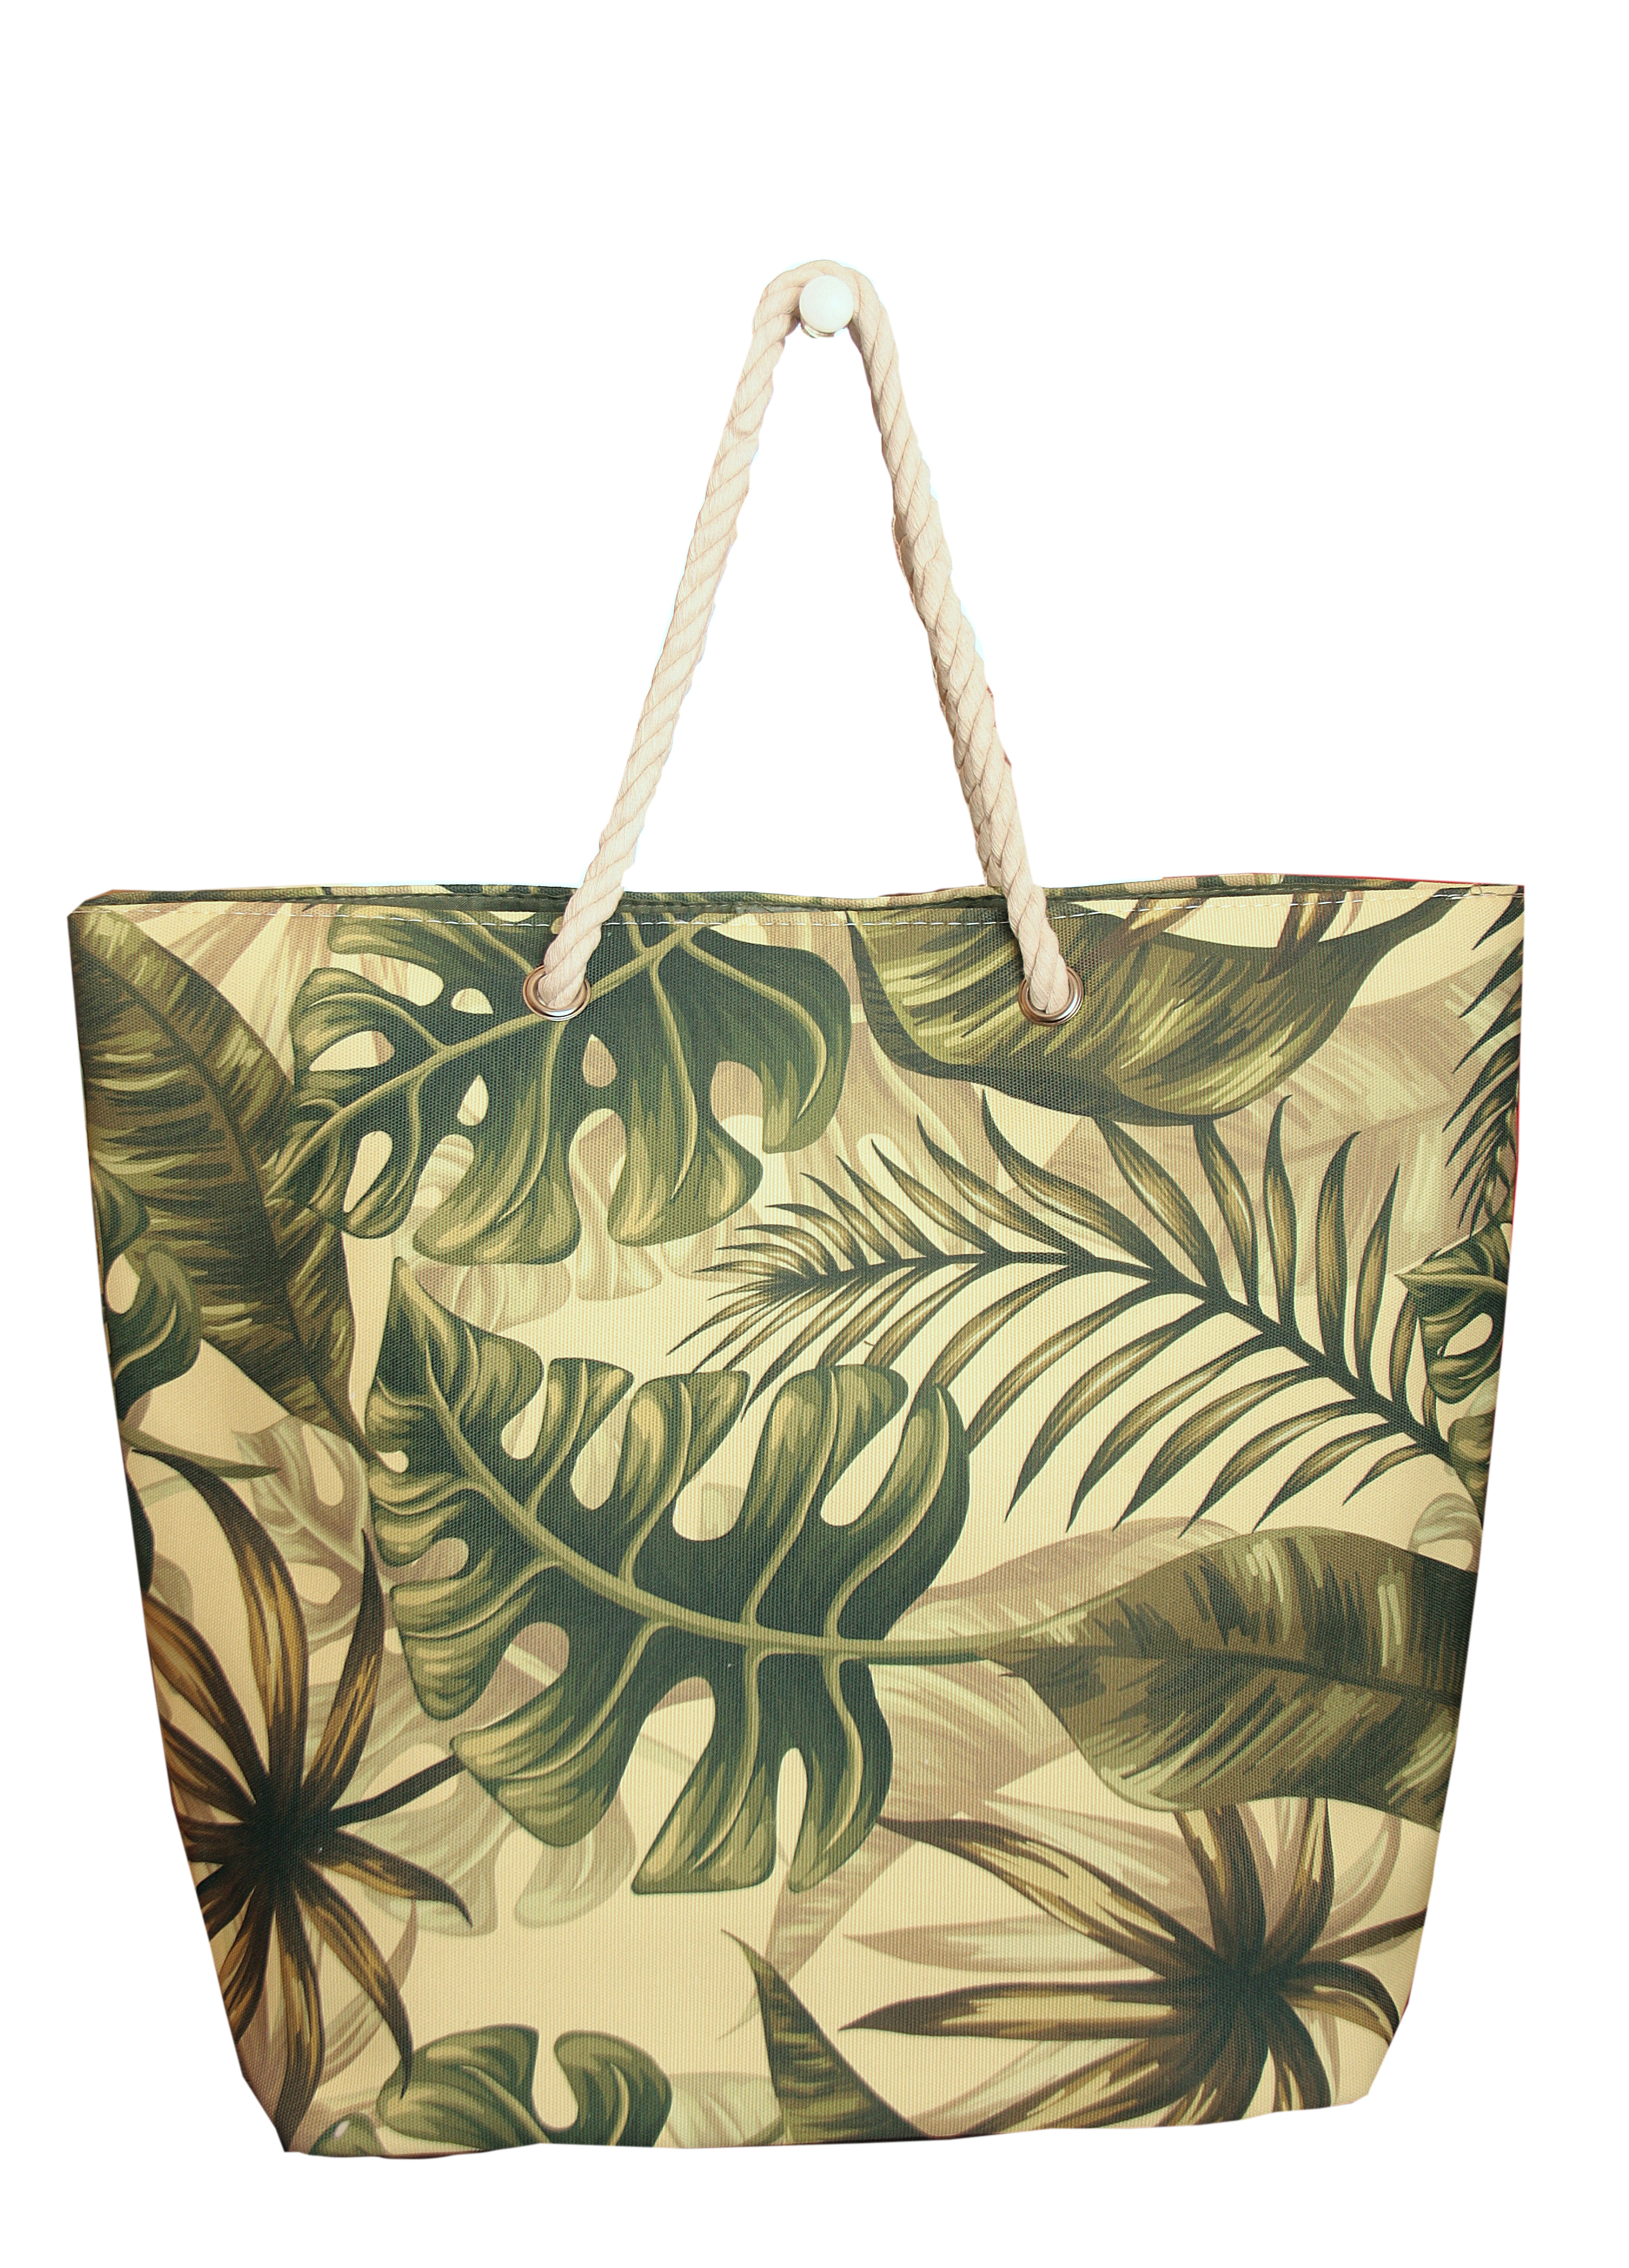 Пляжная сумка Naturel Сумка пляжная, зеленый